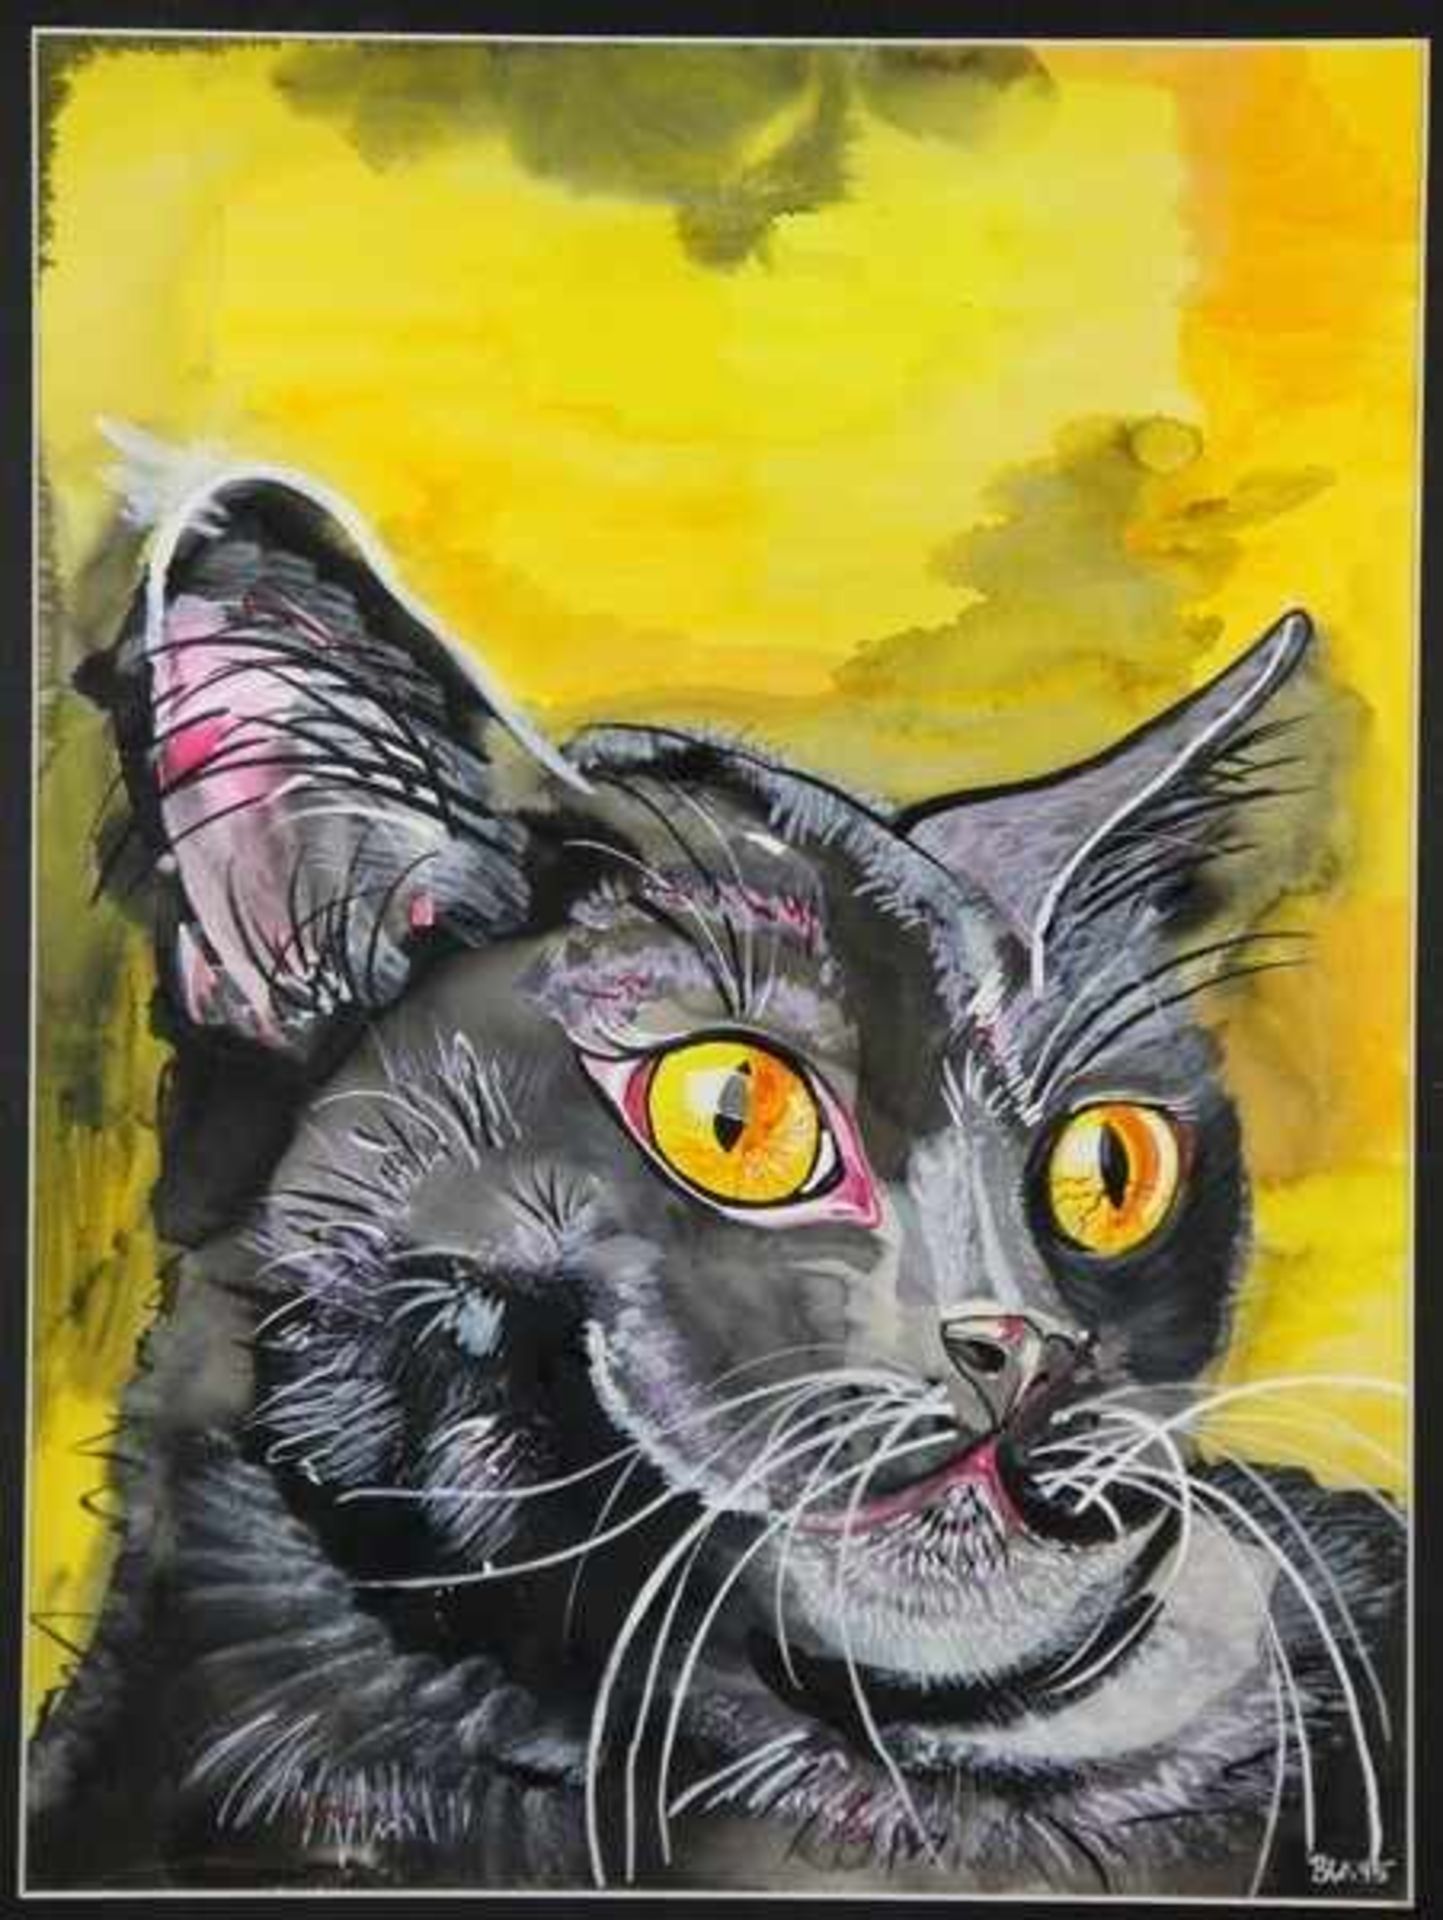 Werthwein-Senger, Beatrice1953-2016, Aquarell/Mischtechnik, Kopf einer schwarzen Katze, leuchtende